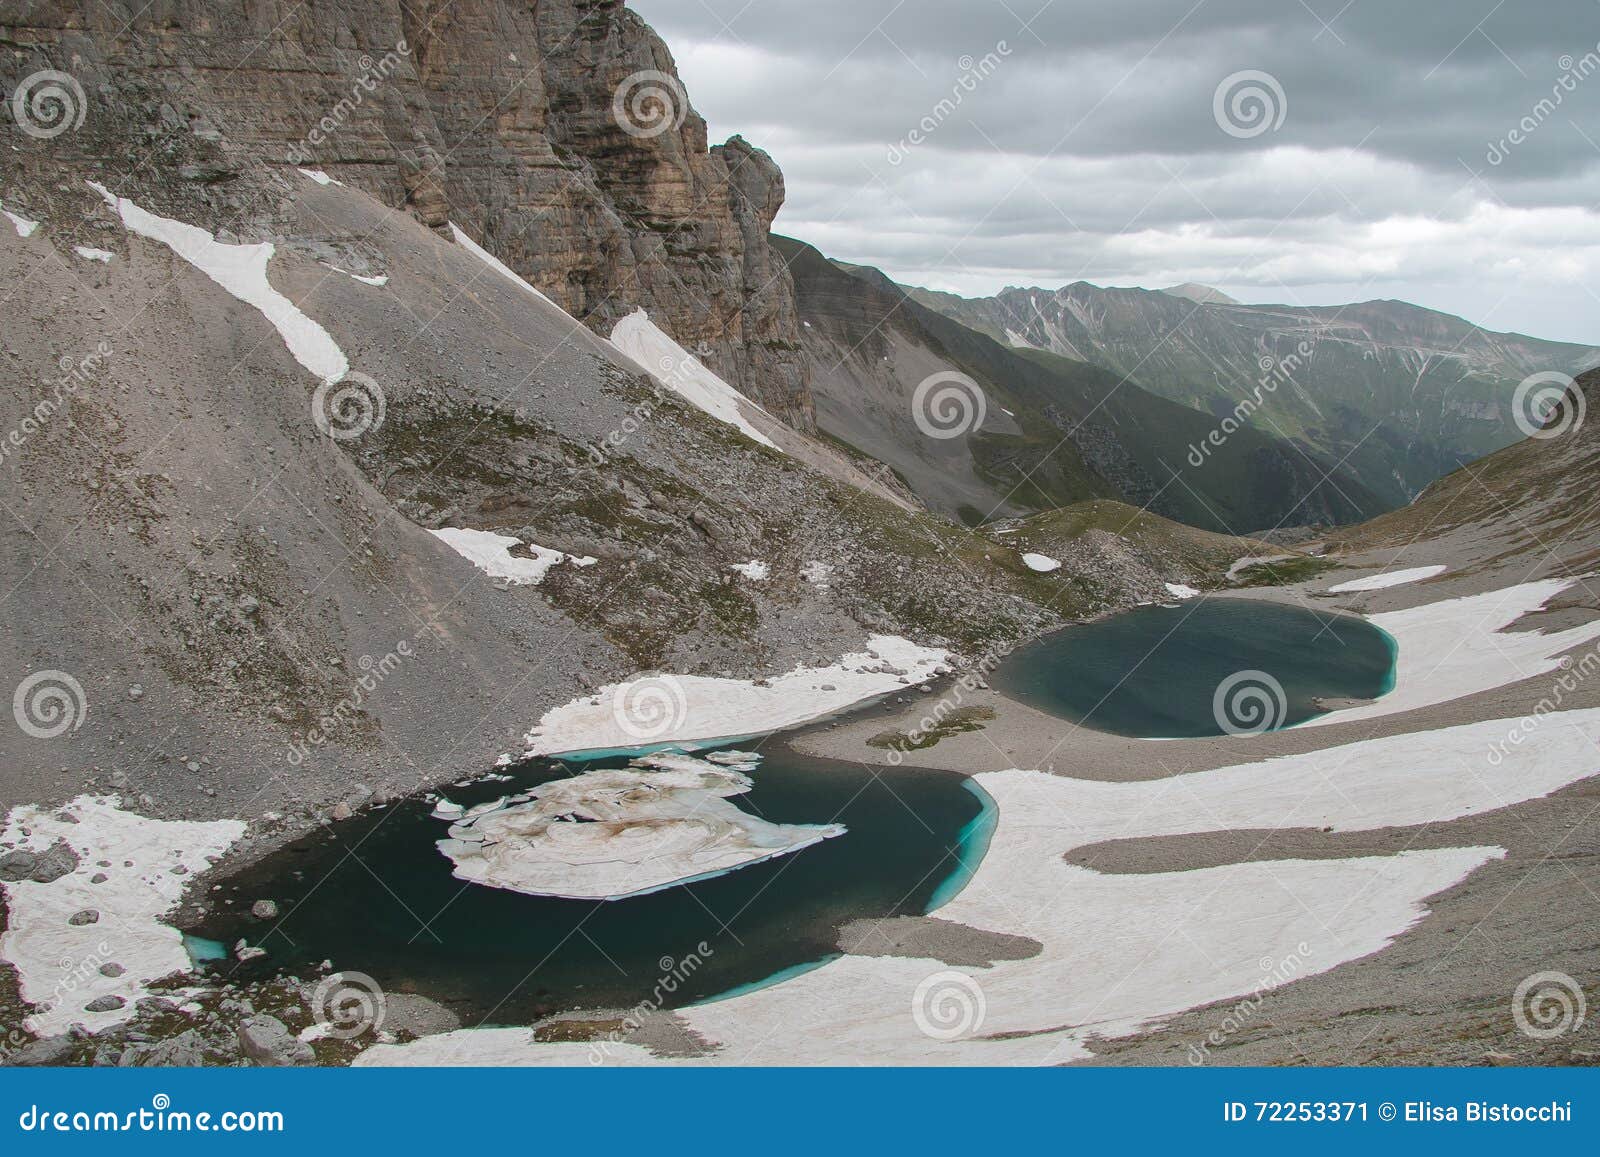 pilato lake (lago di pilato) on vettore mountain